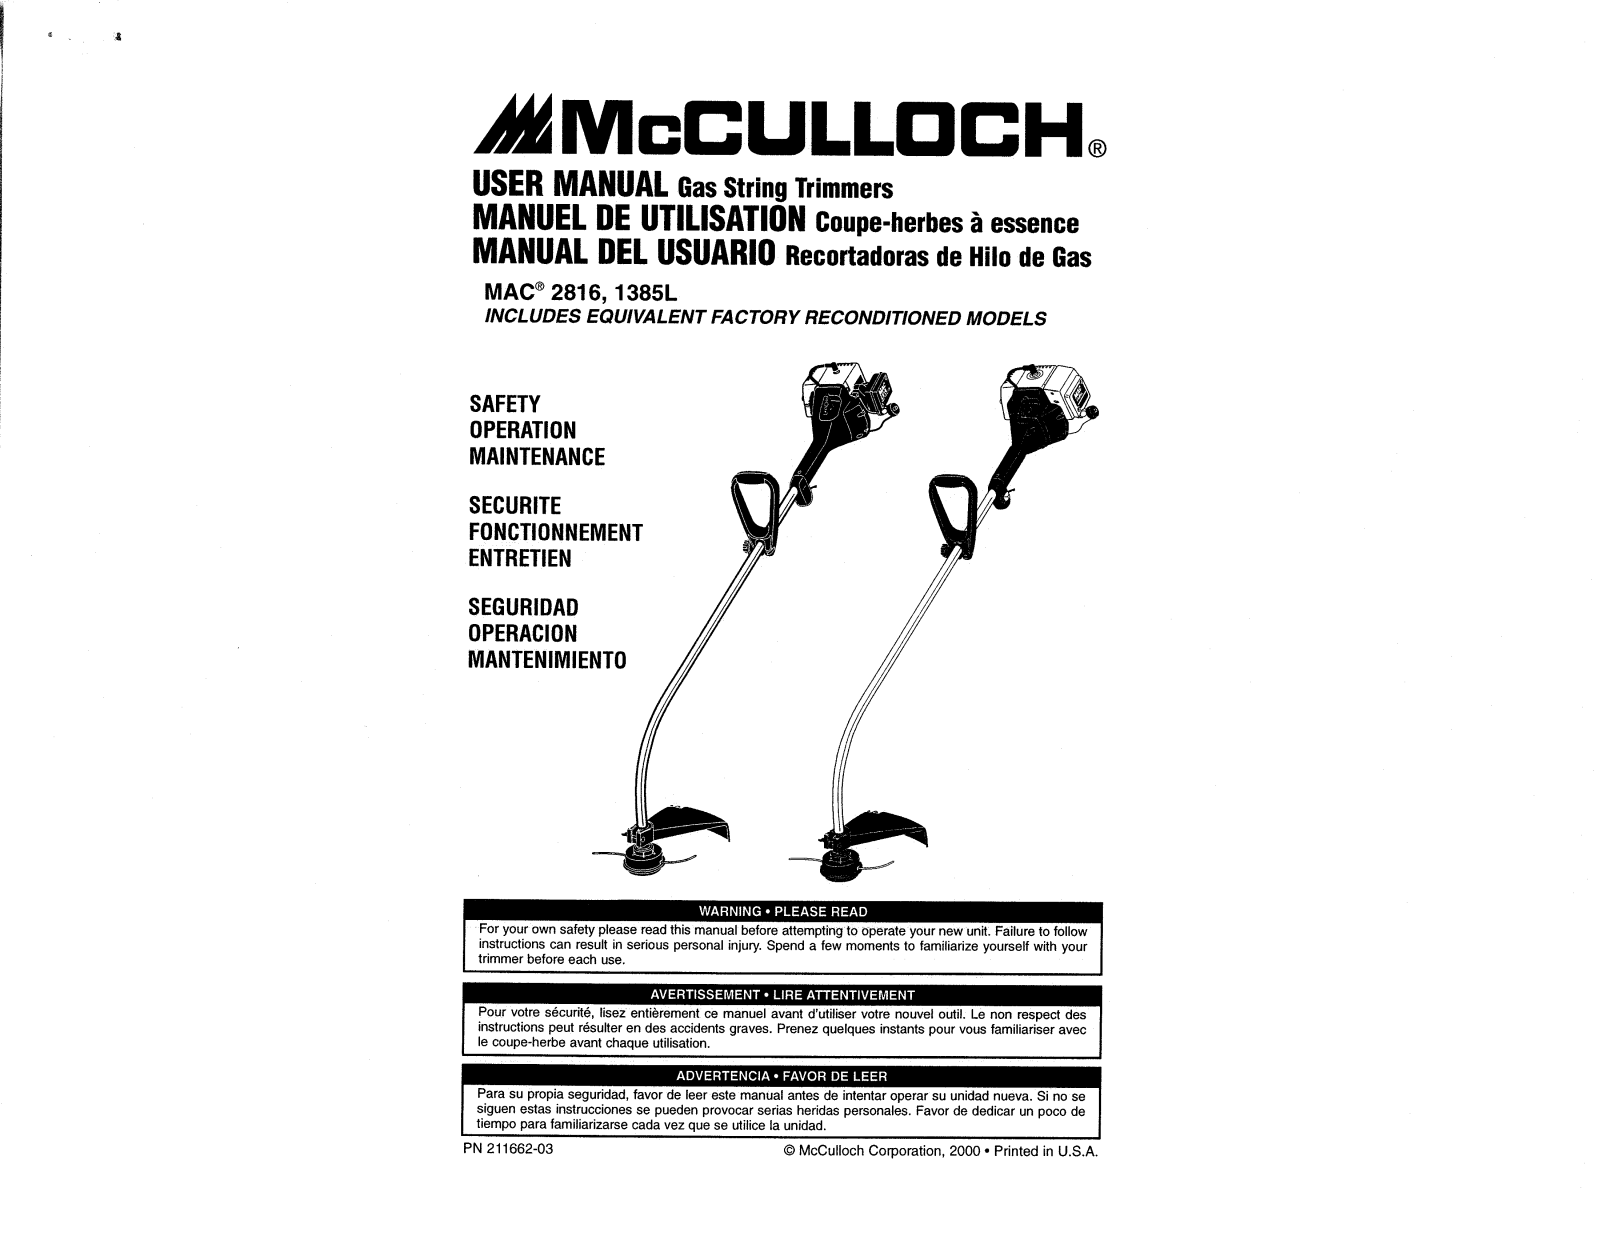 mcculloch EAGER BEAVER 282, 2816, EAGER BEAVER 287, 1385l user Manual